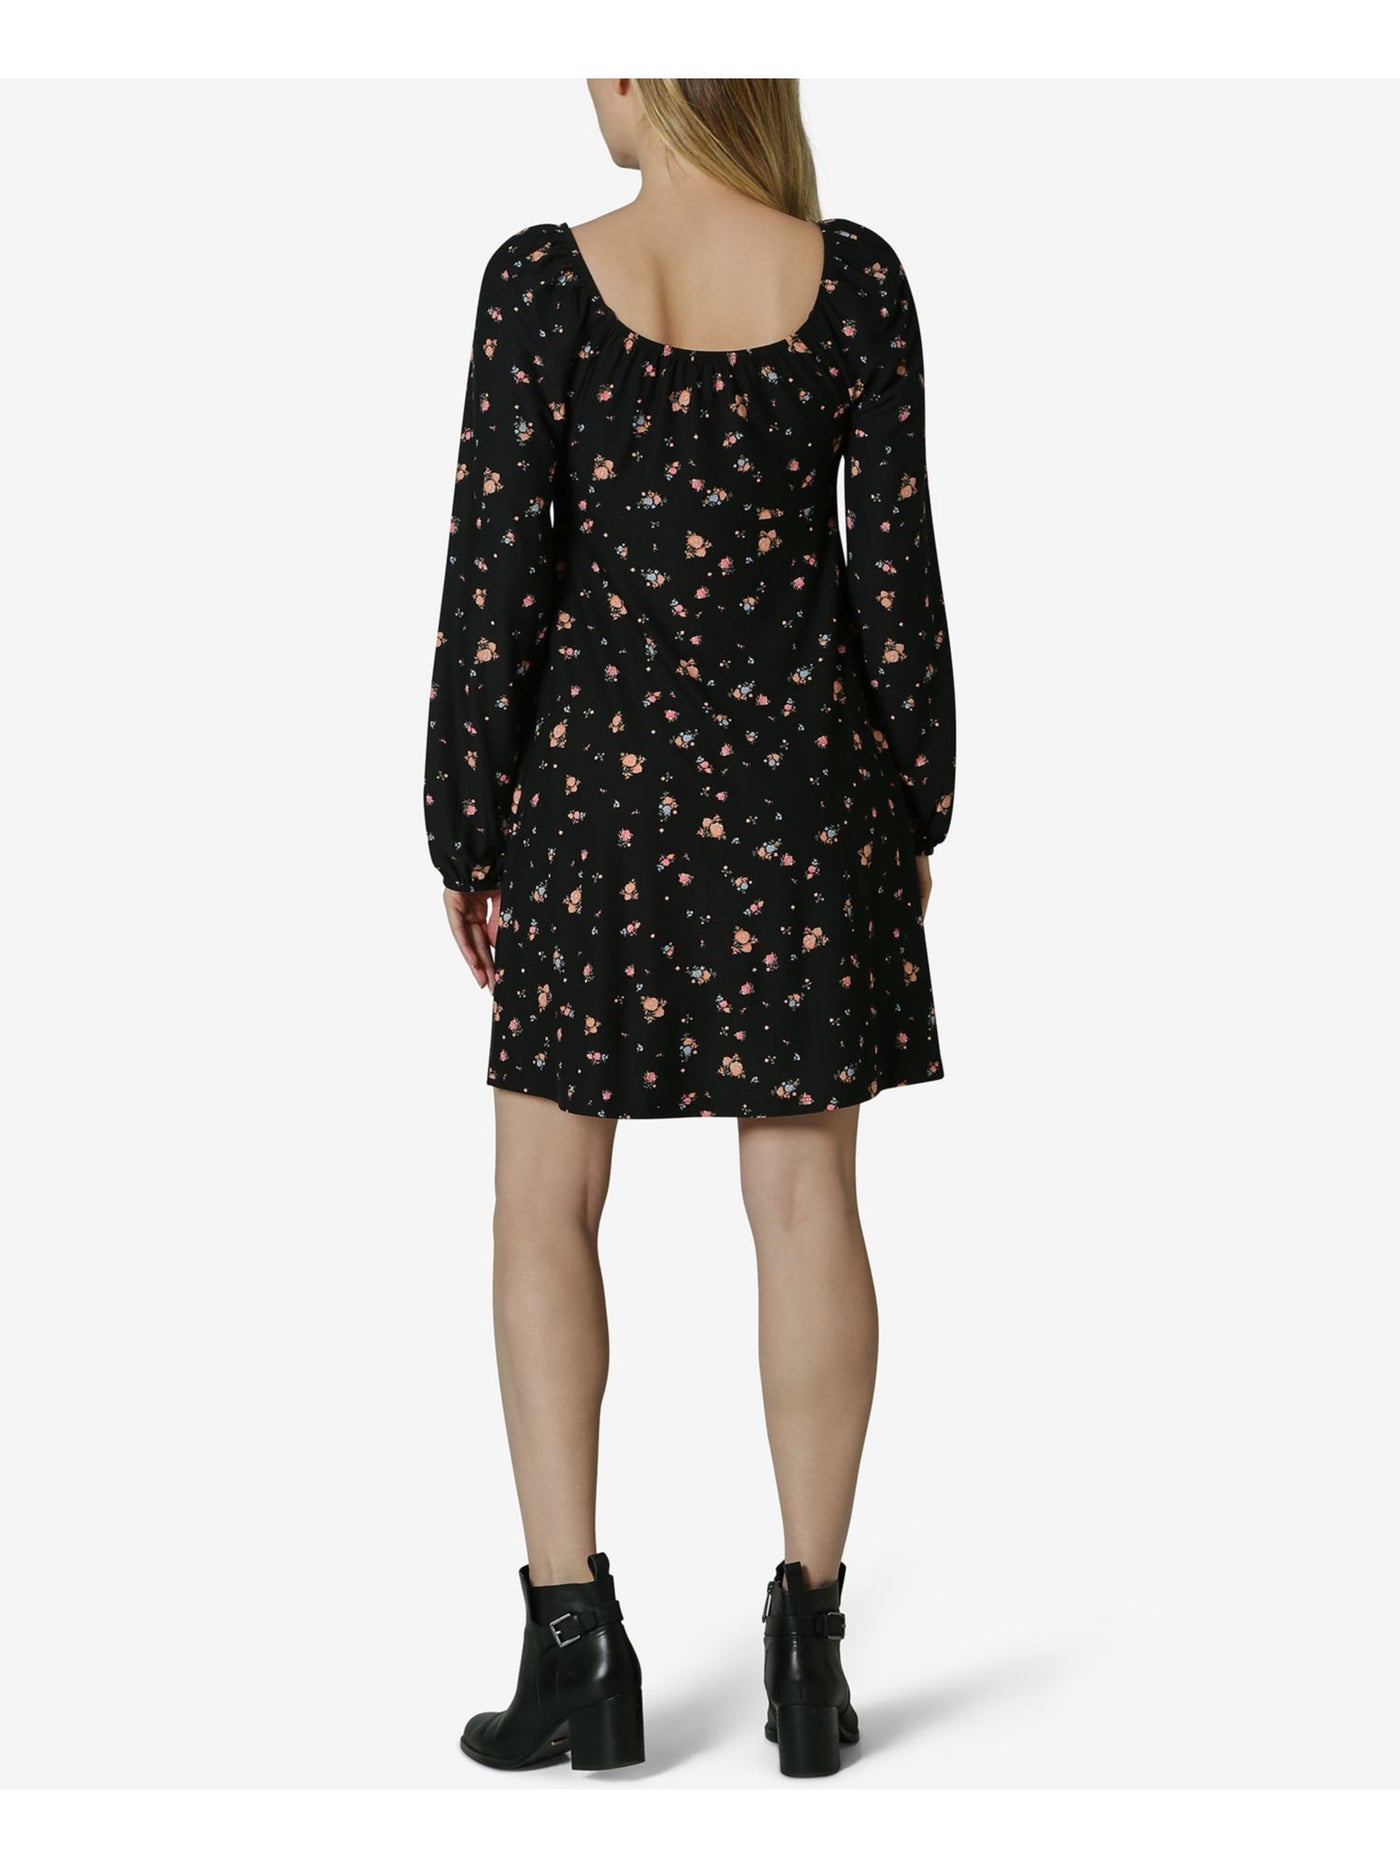 ULTRA FLIRT Womens Black Floral Raglan Sleeve Scoop Neck Short Shift Dress Juniors XL